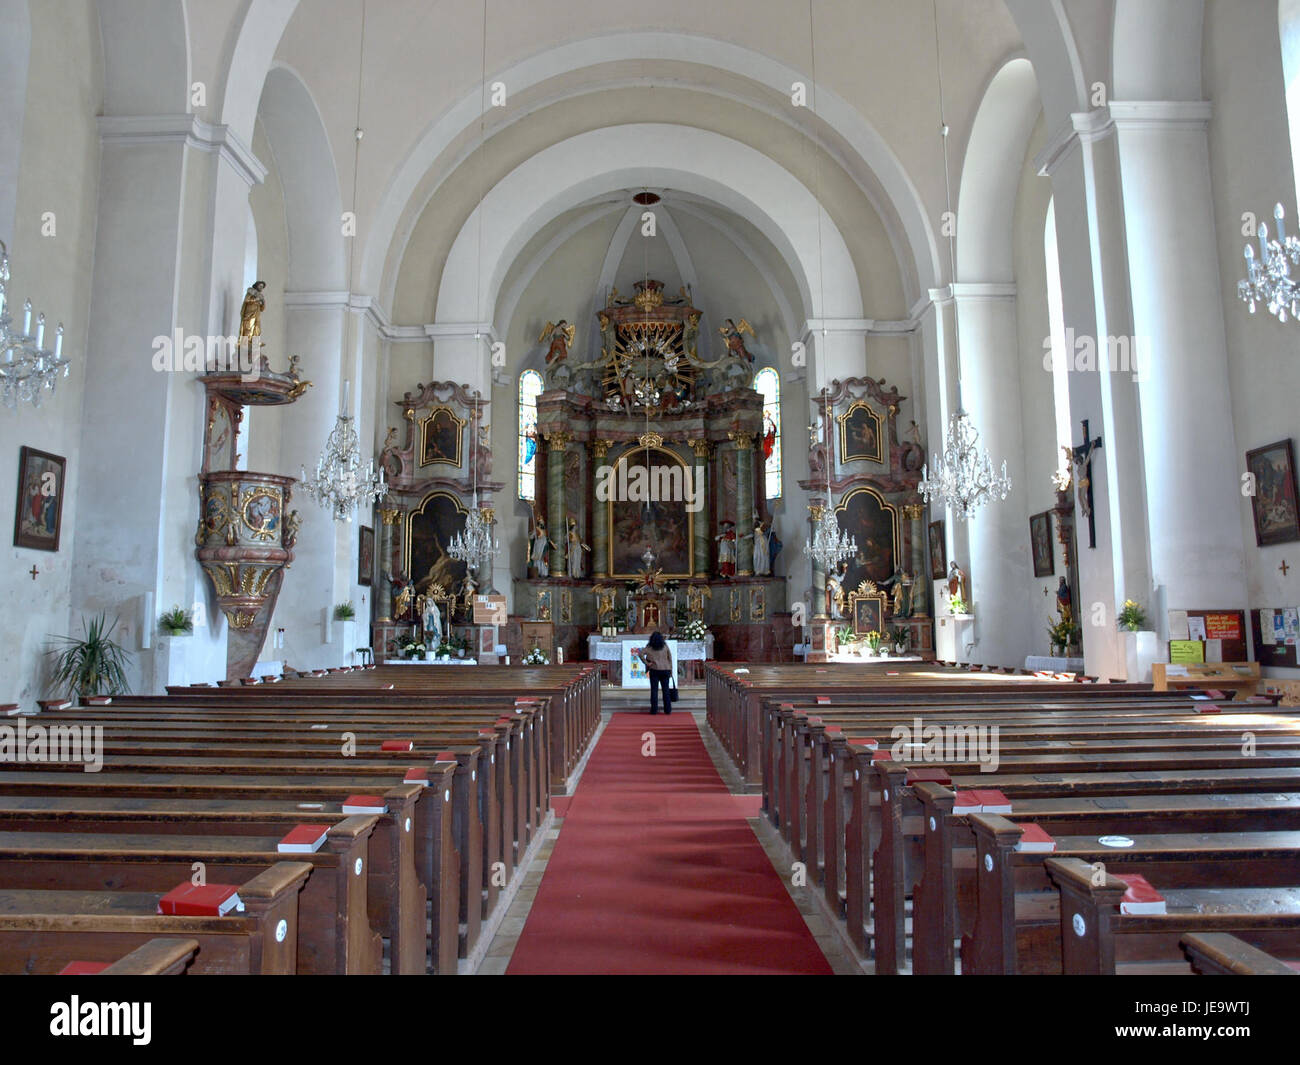 2013.04.21 - Opponitz - Pfarrkirche hl. Kunigunde - 03 Stock Photo